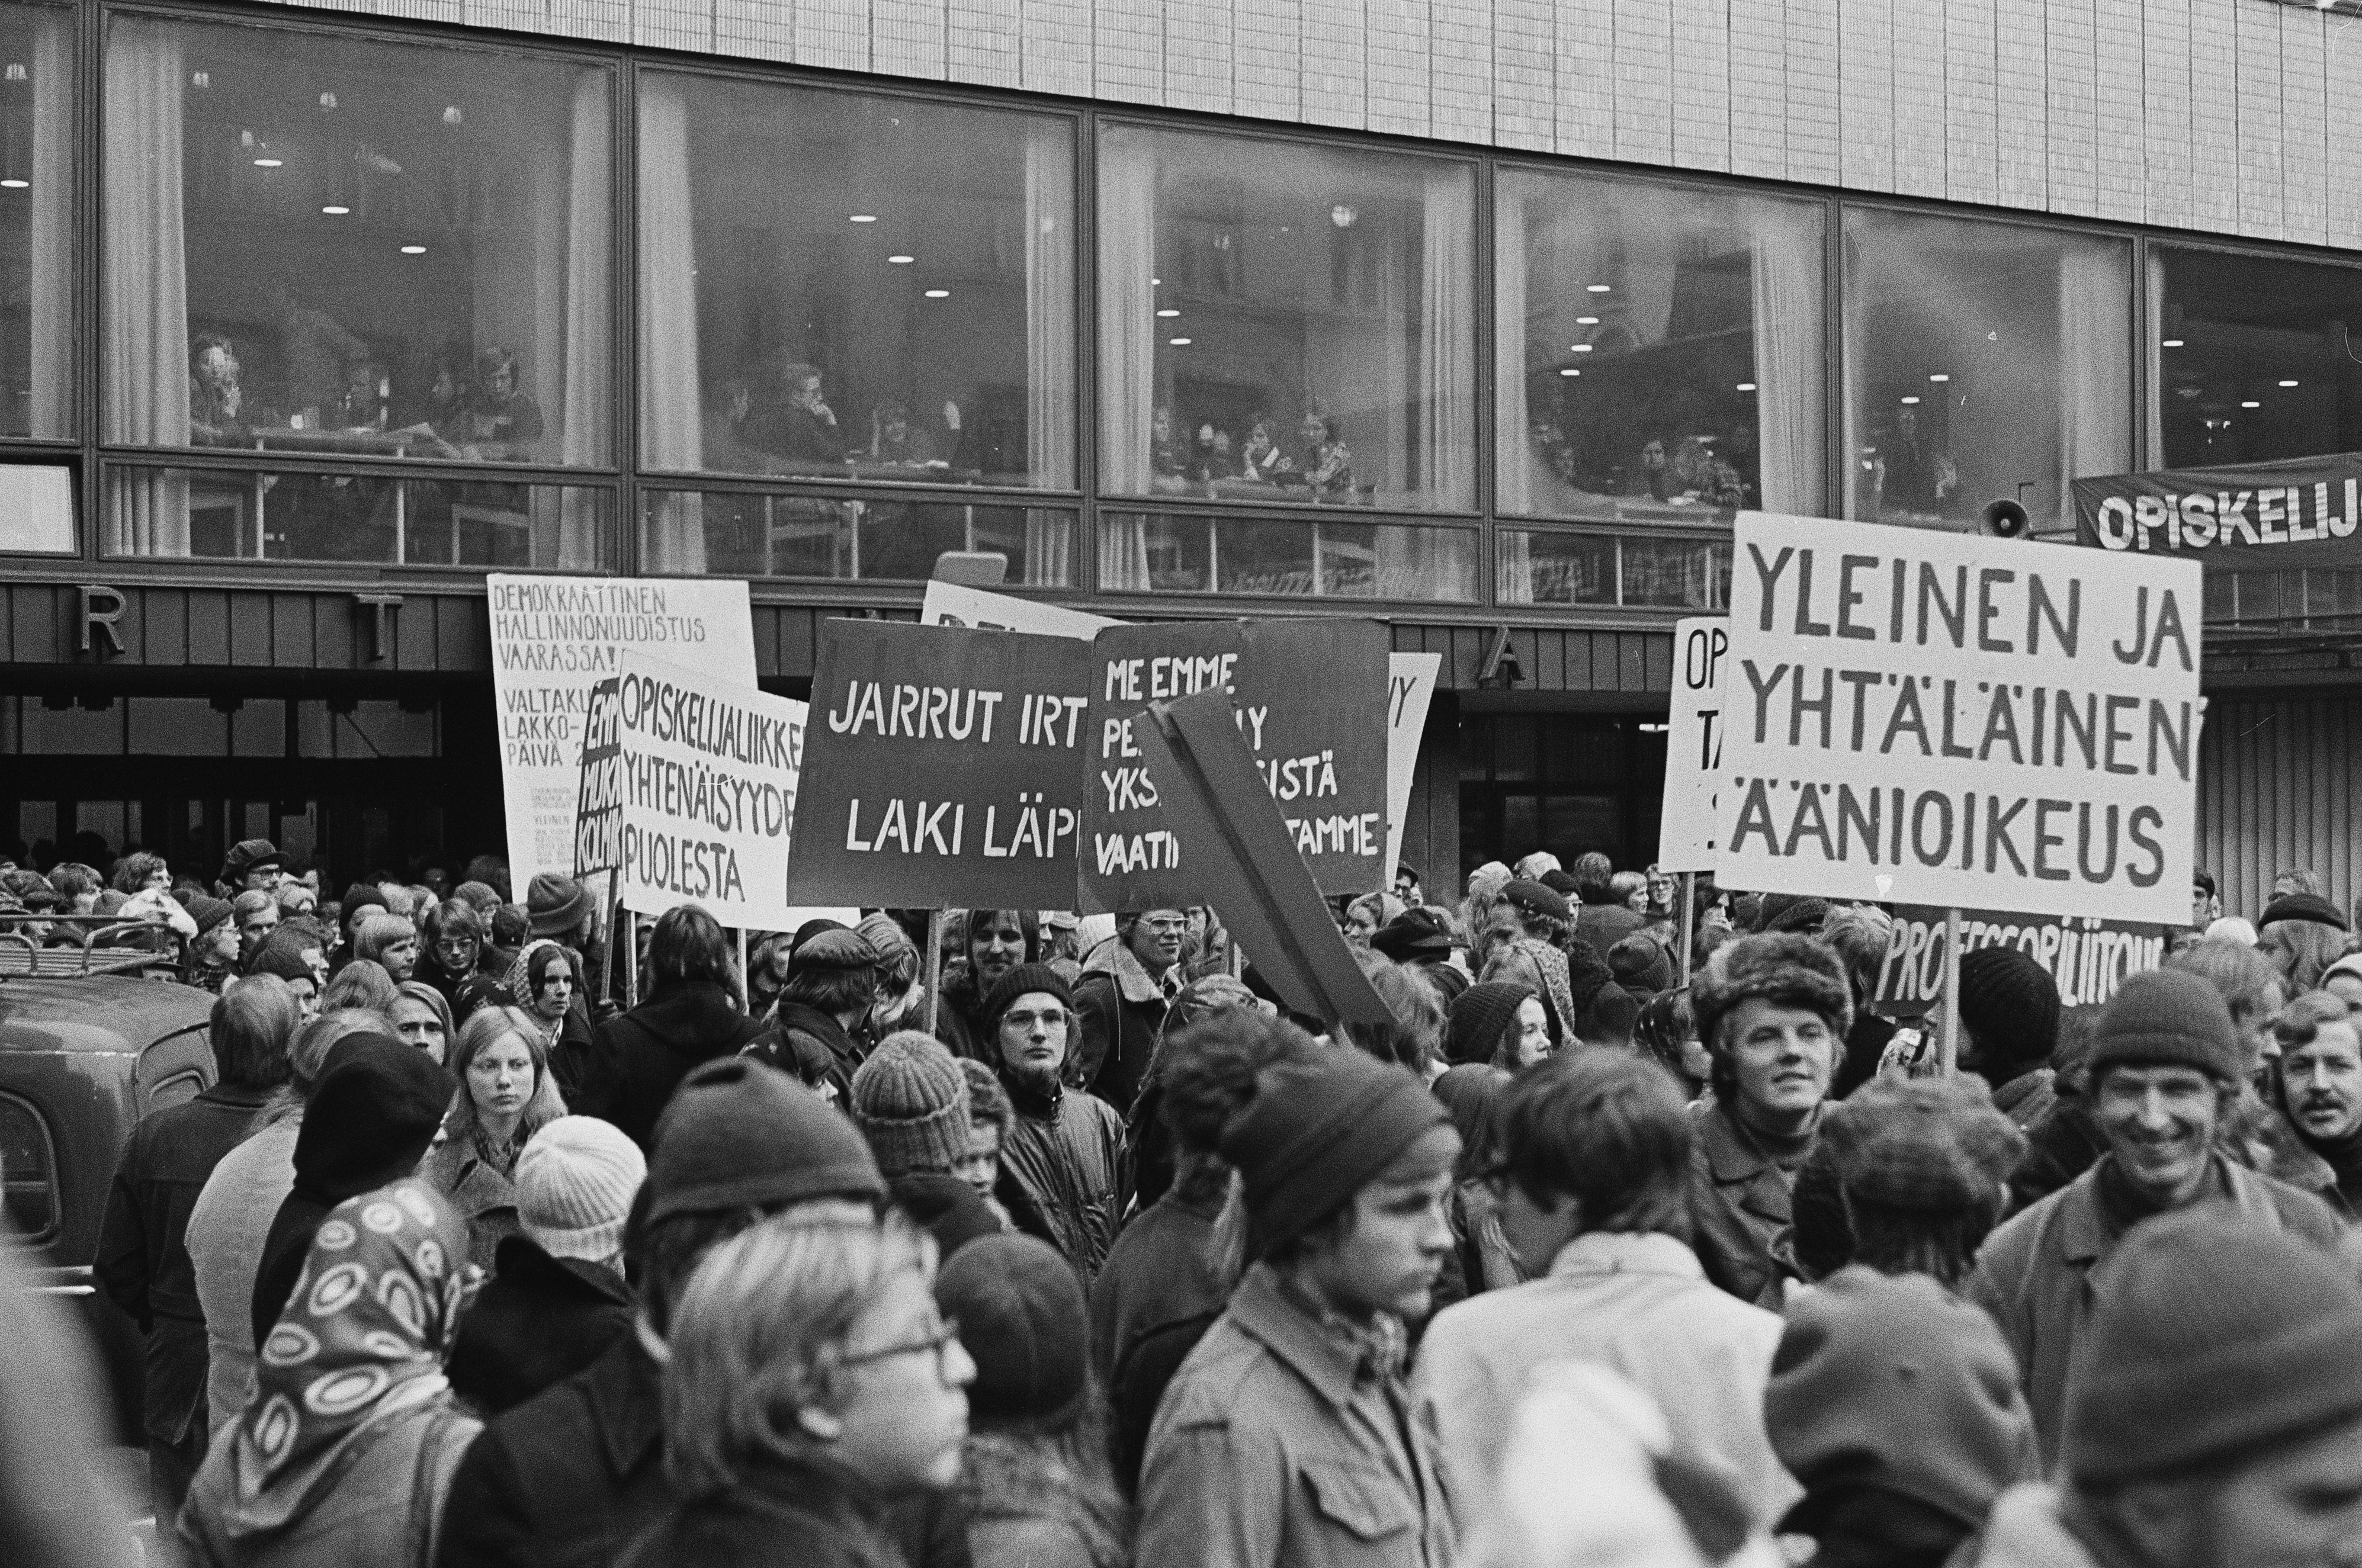 Mielenosoitus, jolla opiskelijaliike vaati yleistä ja yhtäläistä äänioikeutta (yyä) yliopistojen ja korkeakoulujen hallintoelinten valintaperusteeksi. Mielenosoittajia Helsingin yliopiston Porthania-rakennuksen pihalla.